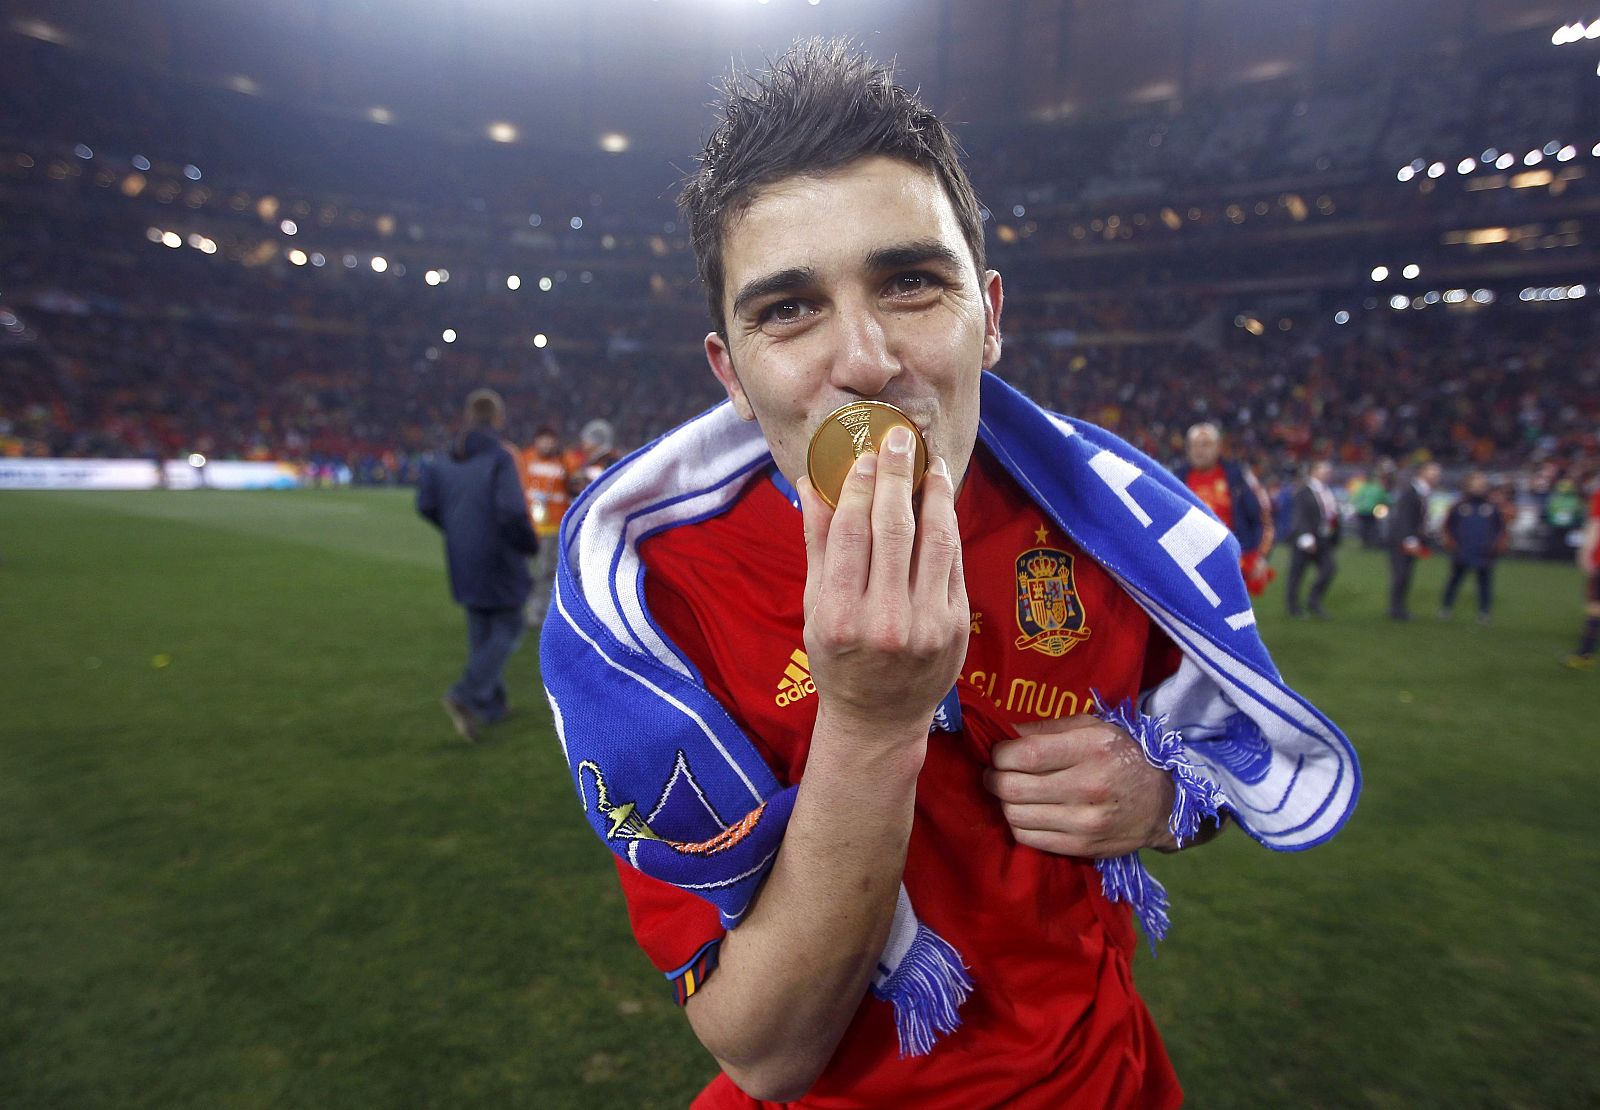 Villa besa su medalla de oro como ganador del Mundial 2010